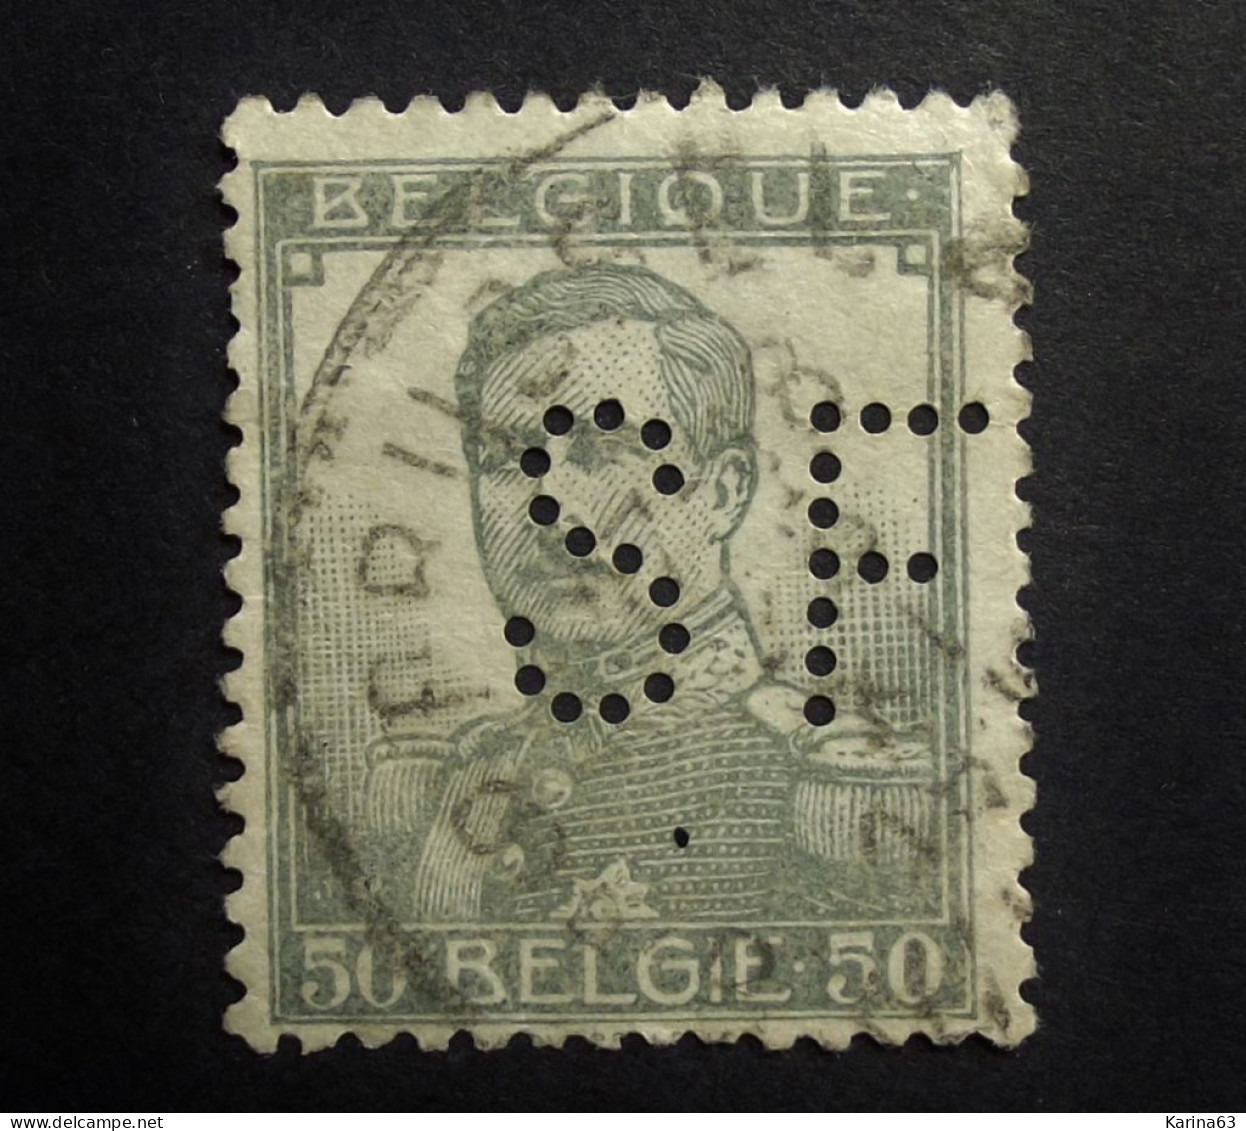 België - Belgique - Perfin Perforé - S F - Brussel  Societe Francaise De Banque Et De Depots	S.F.	1916 -  Canc. Brussel - 1909-34